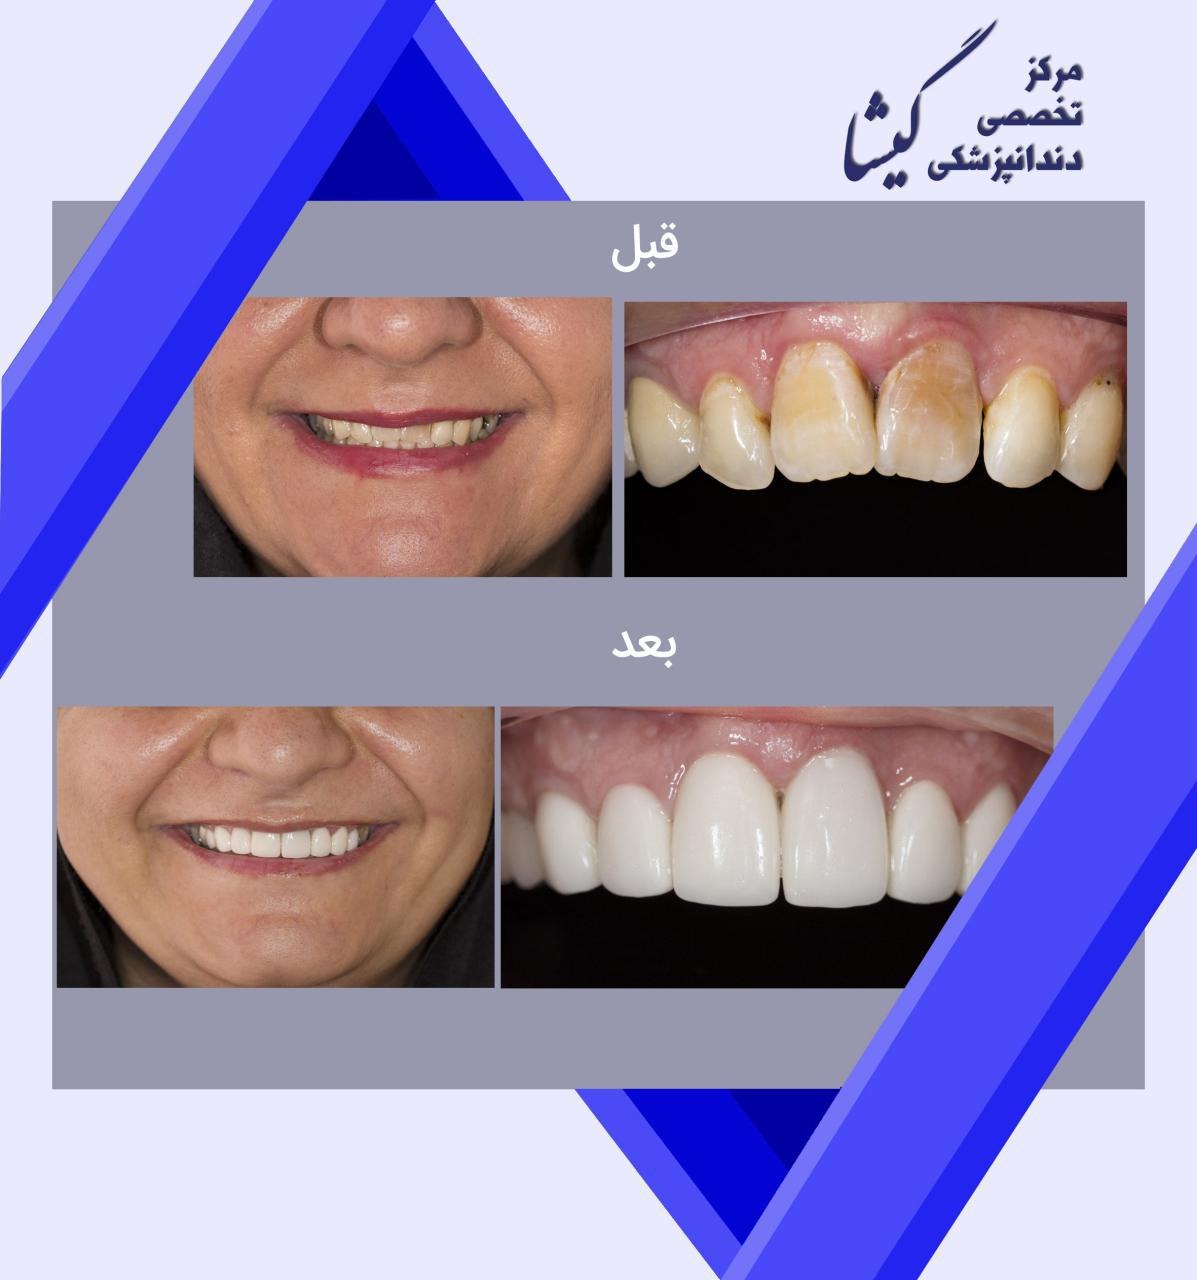 لامینیت سرامیکی ۸ دندان جلویی فک بالا توسط متخصص پروتز های دندانی و زیبایی در تهران